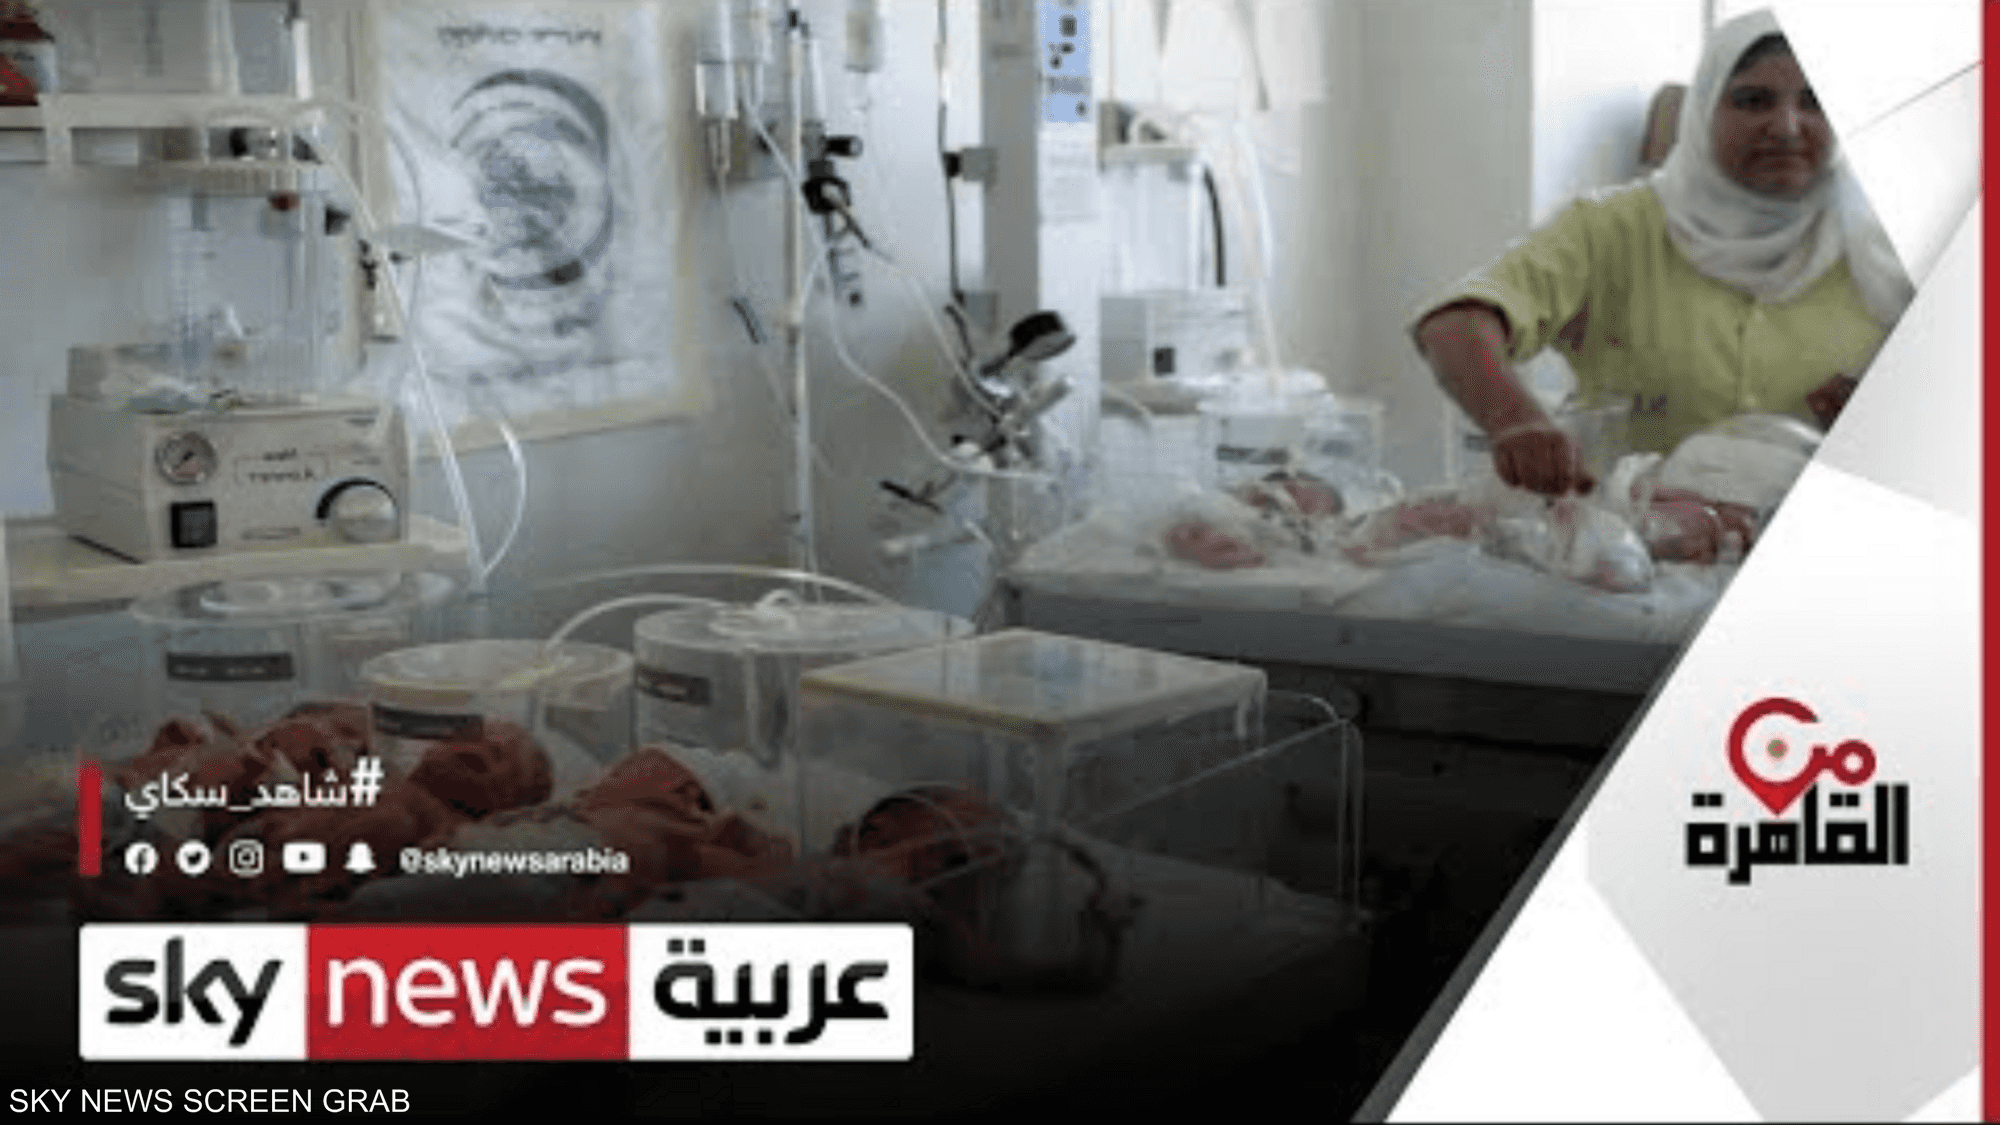 معدلات الإنجاب في مصر تسجل انخفاضا ملحوظا